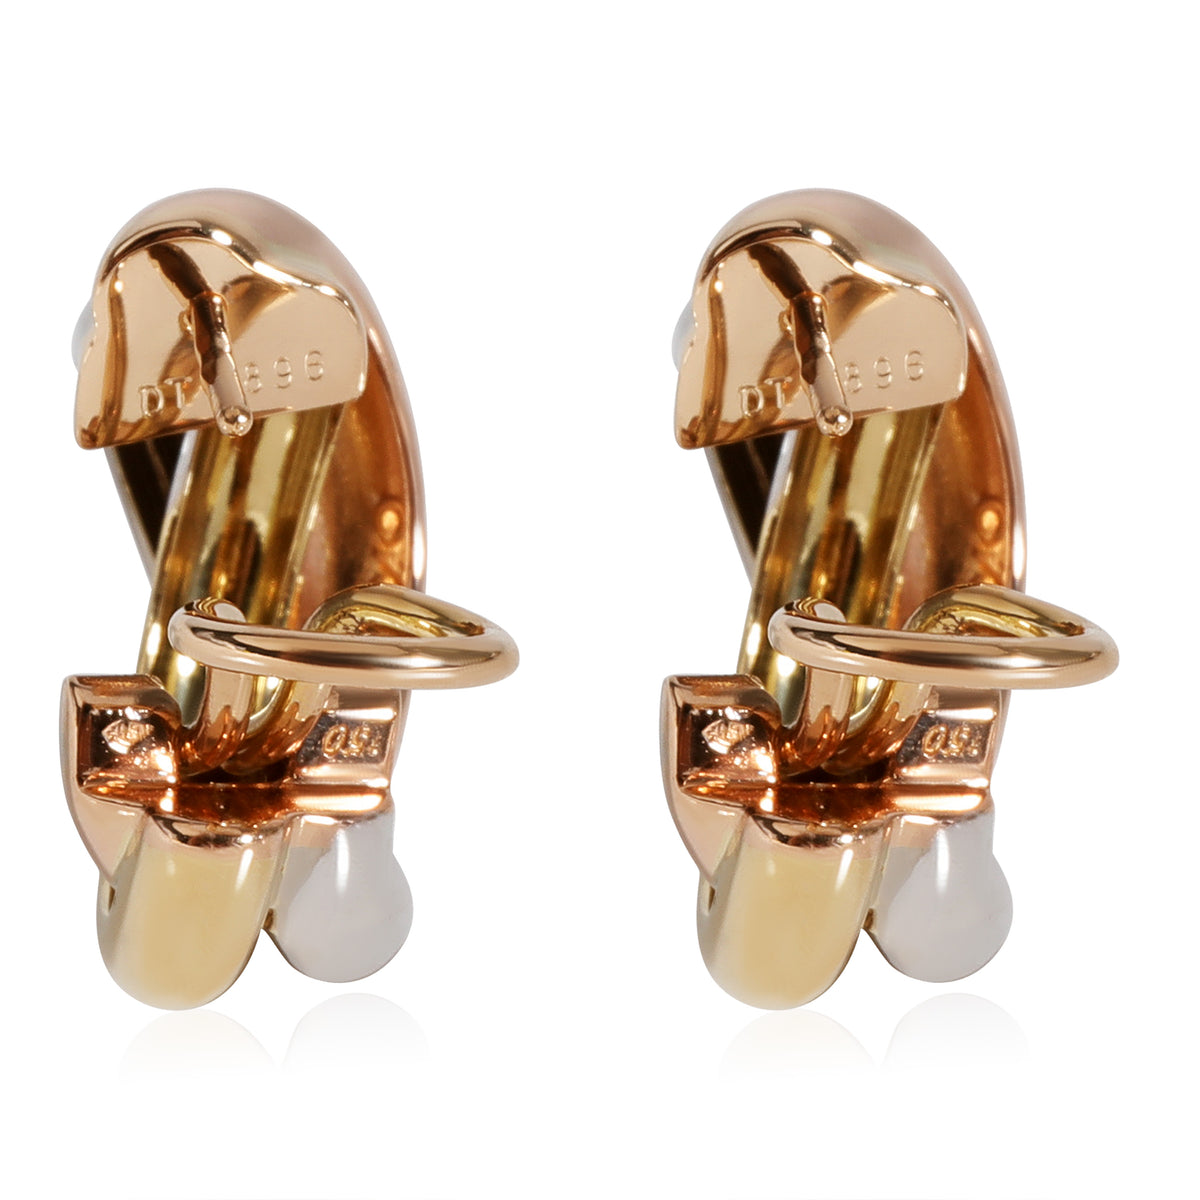 Cartier Trinity Earrings in 18k 3 Tone Gold